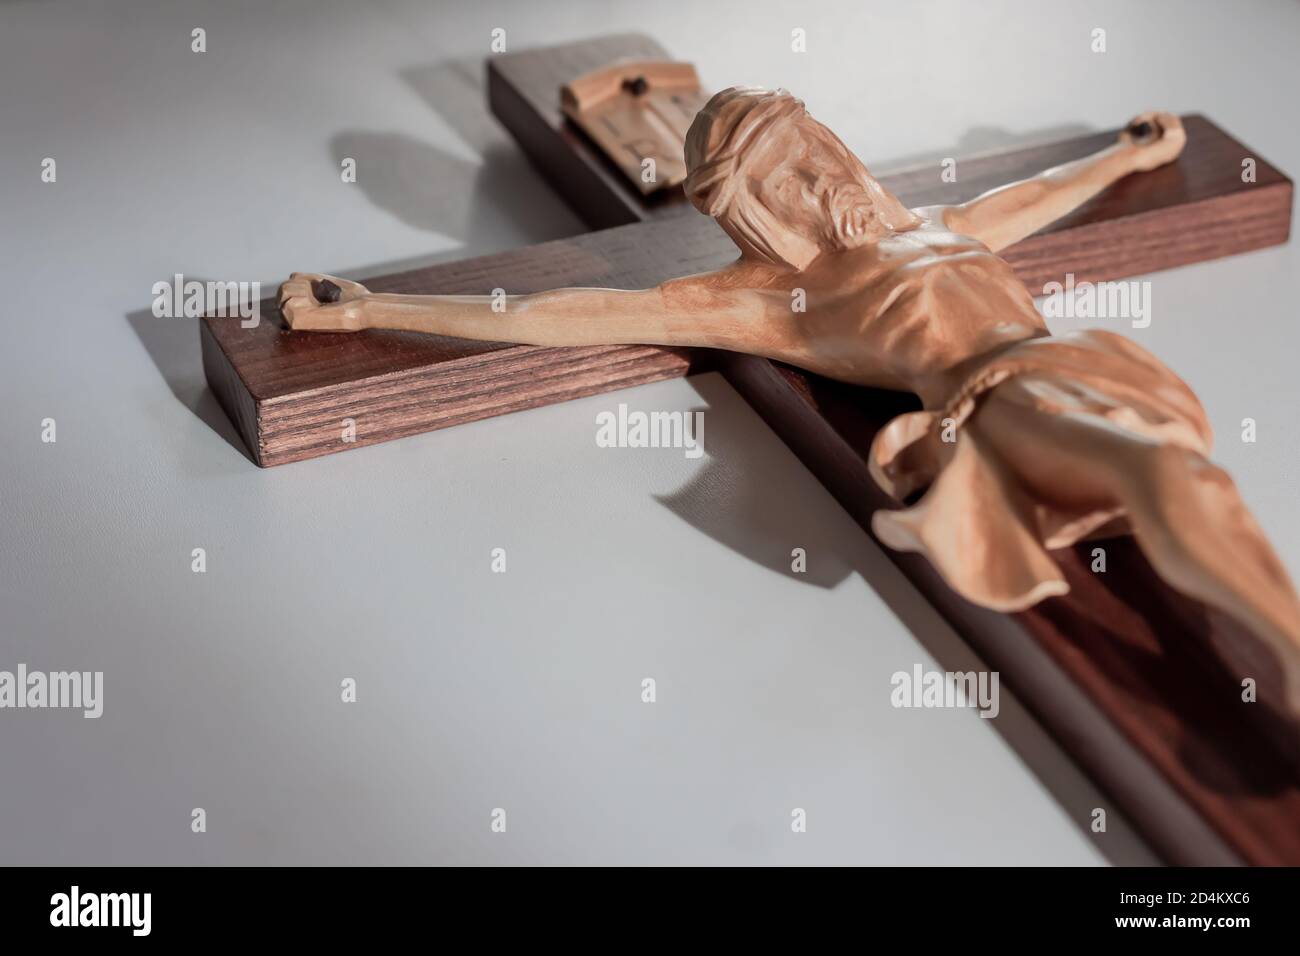 Catholic wood crucifix cross on plain white background in warm light Stock Photo